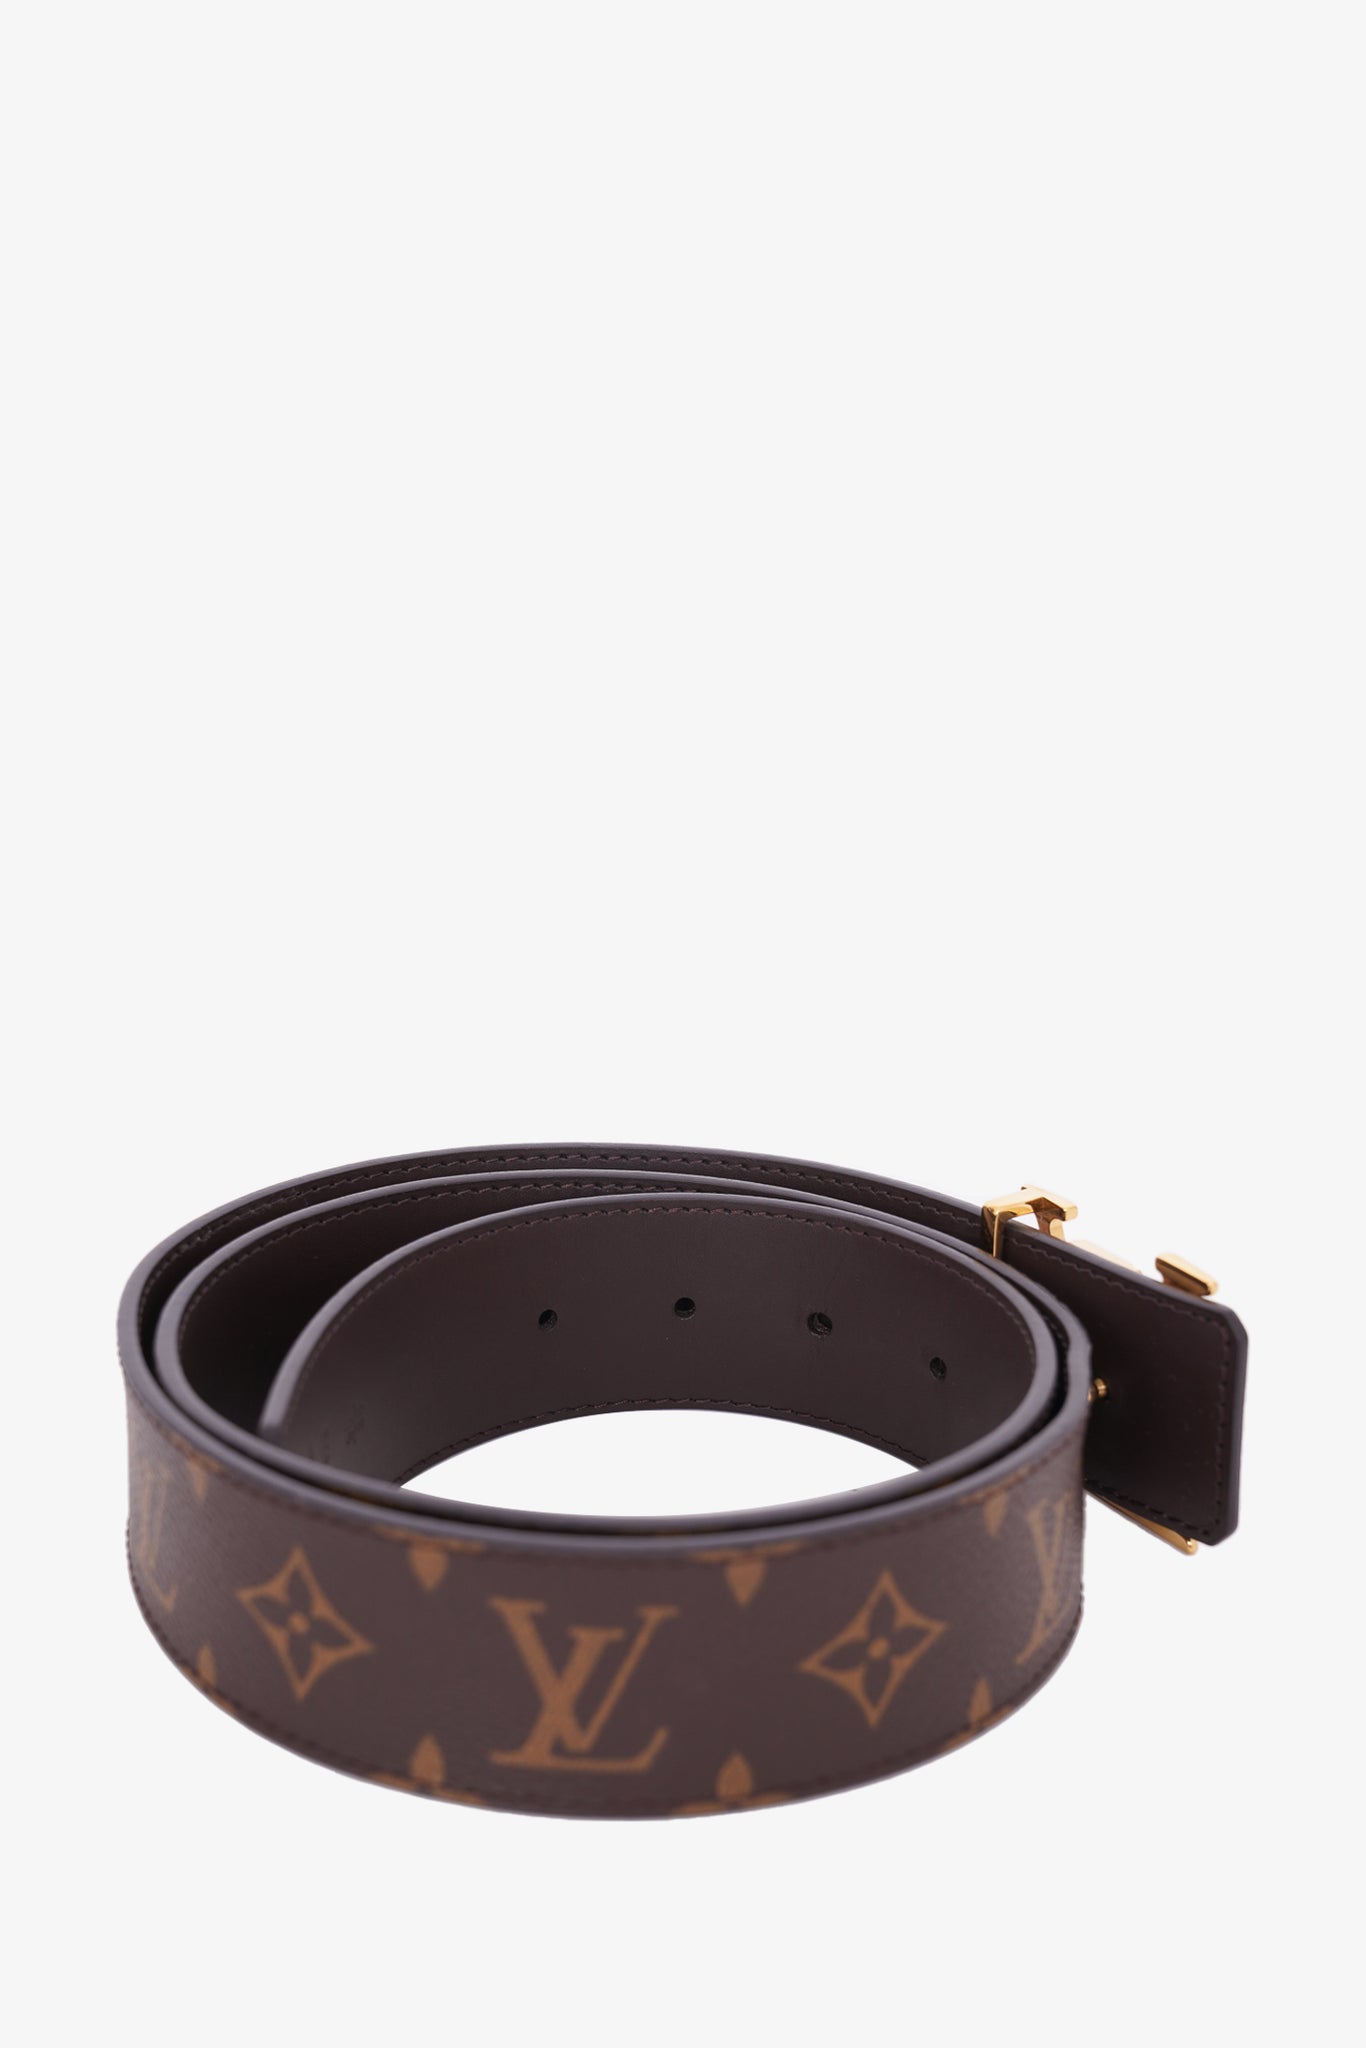 Louis Vuitton, Accessories, Authentic Louis Vuitton Monogram Belt Size 8